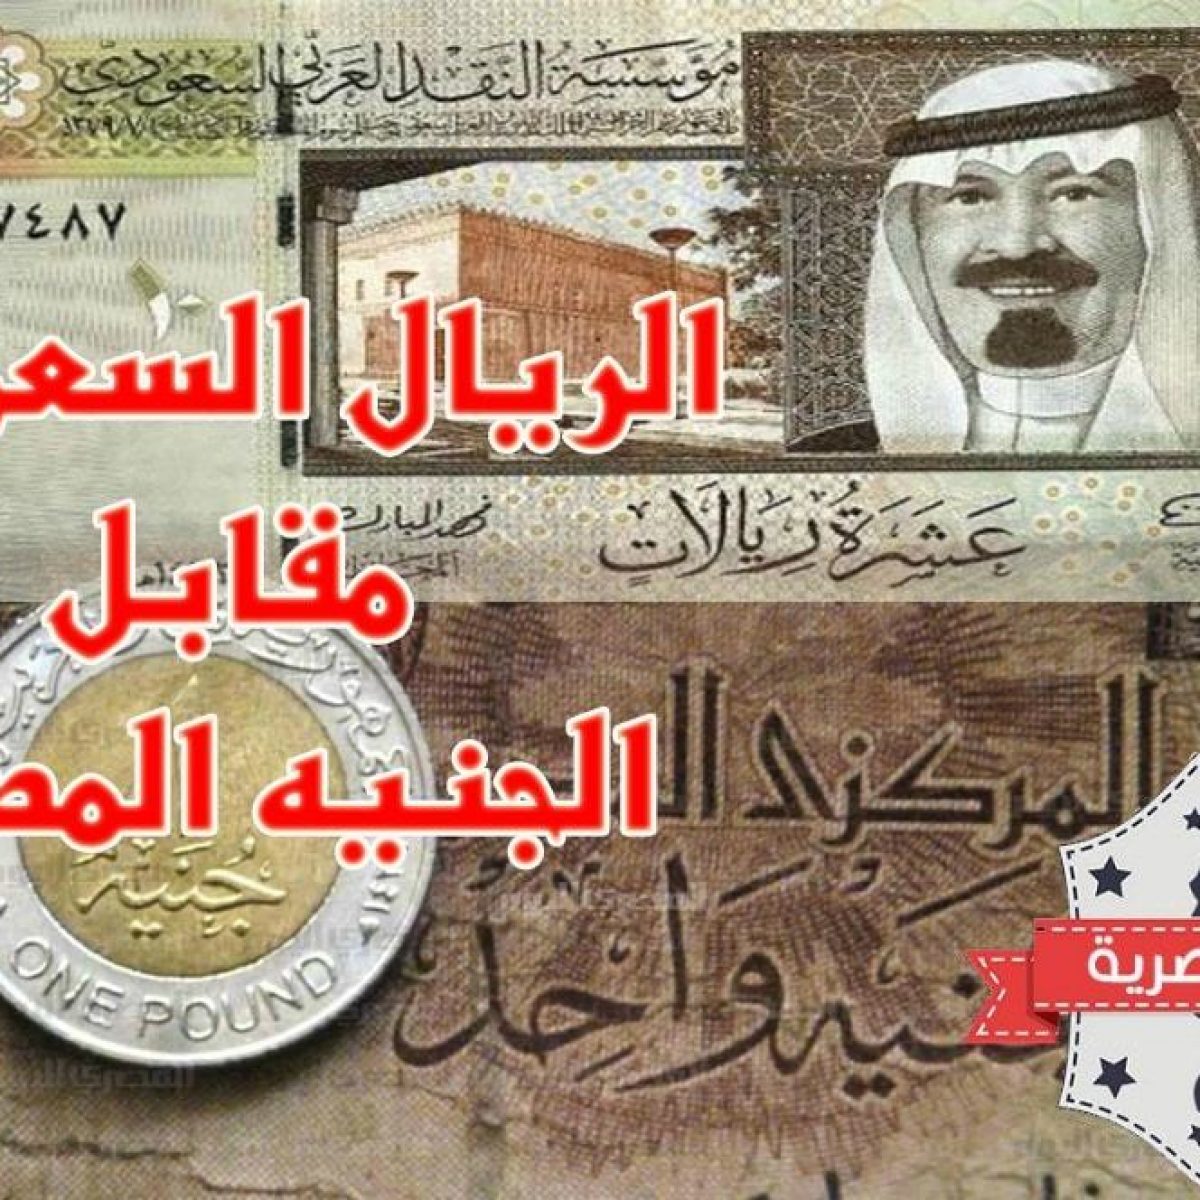 أنا يمني سعر الريال السعودي اليوم الأحد 29 7 2018 جميع البنوك في